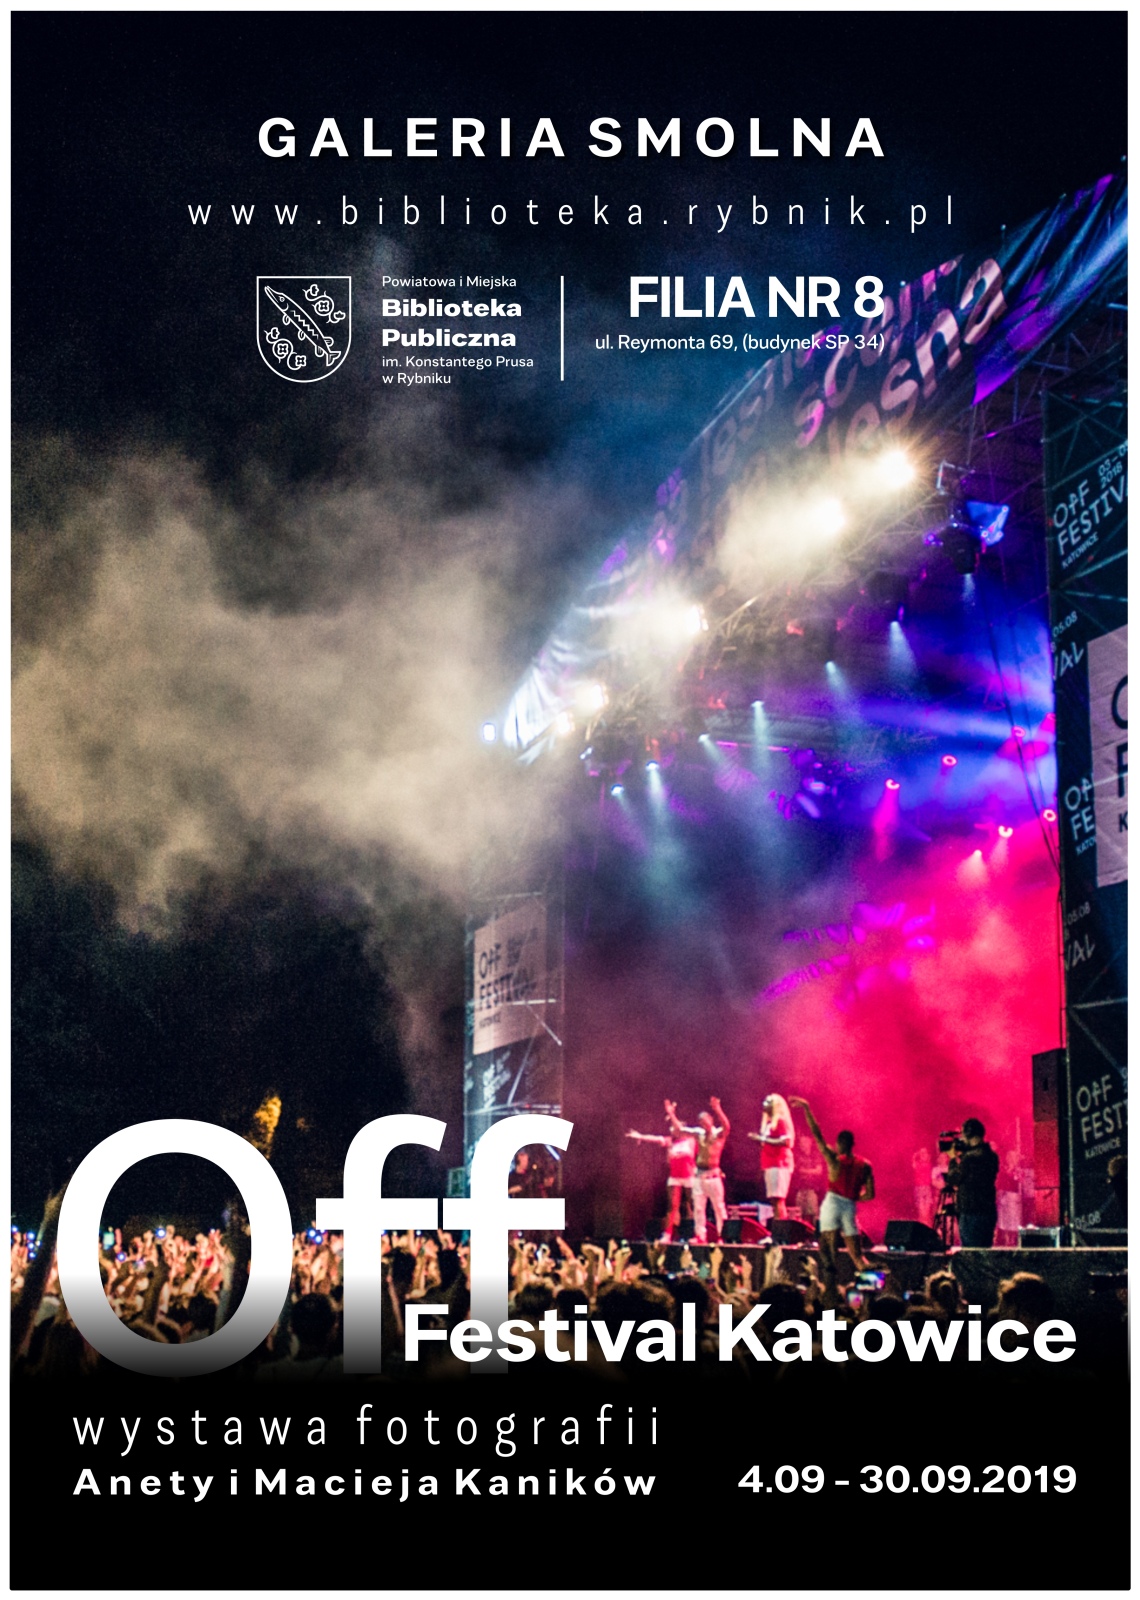 Off_Festival_Katowice_zmiana_terminu_koncowego.jpg